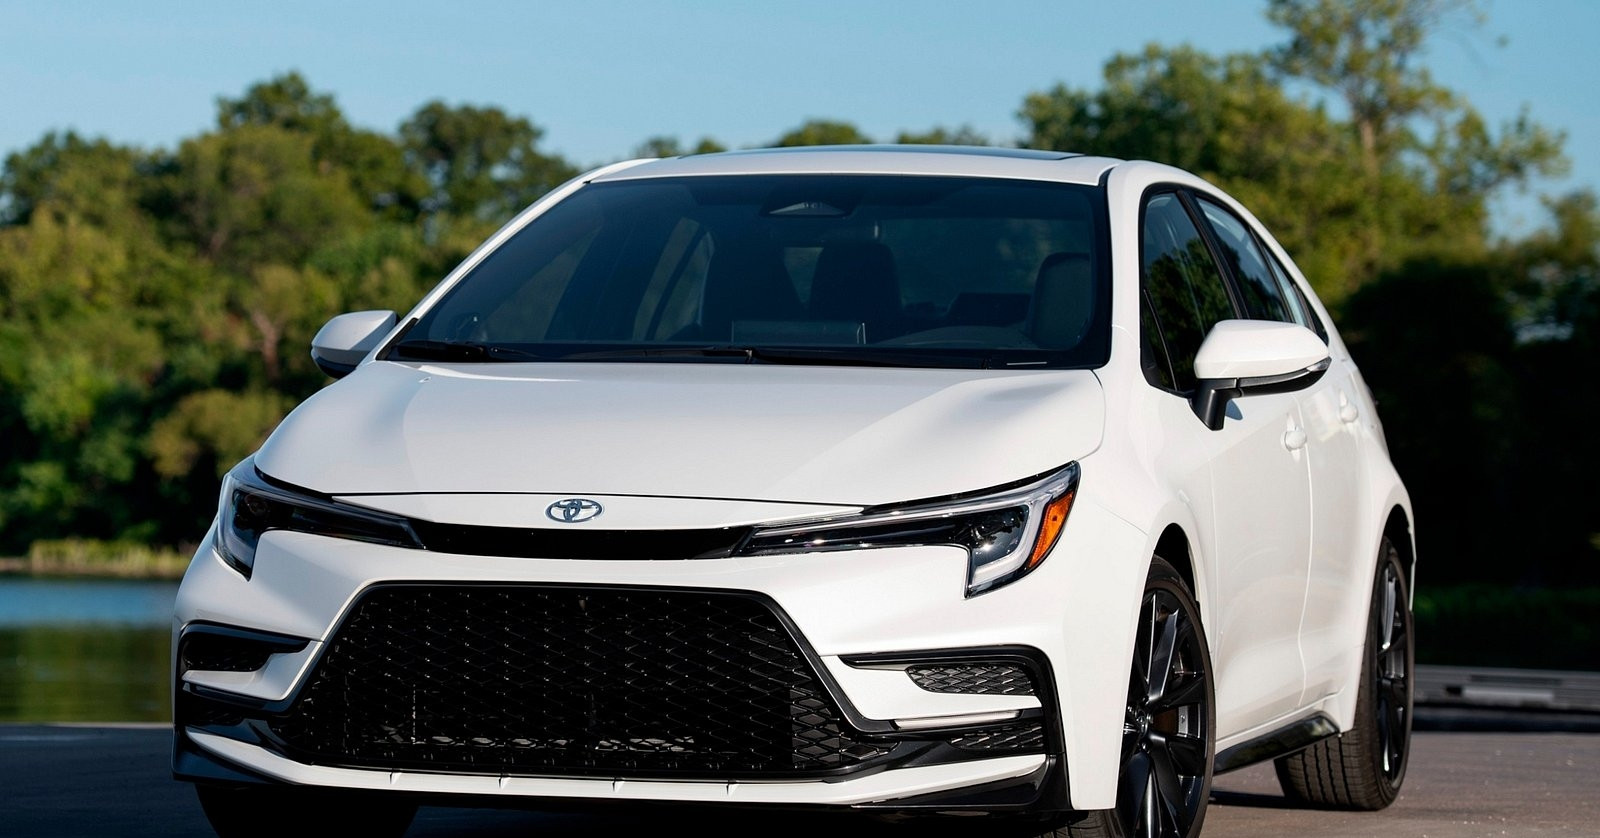 View - Top 10 mẫu xe giá rẻ bền bỉ, có xe đã dừng bán ở Mỹ là vua doanh số ở VN